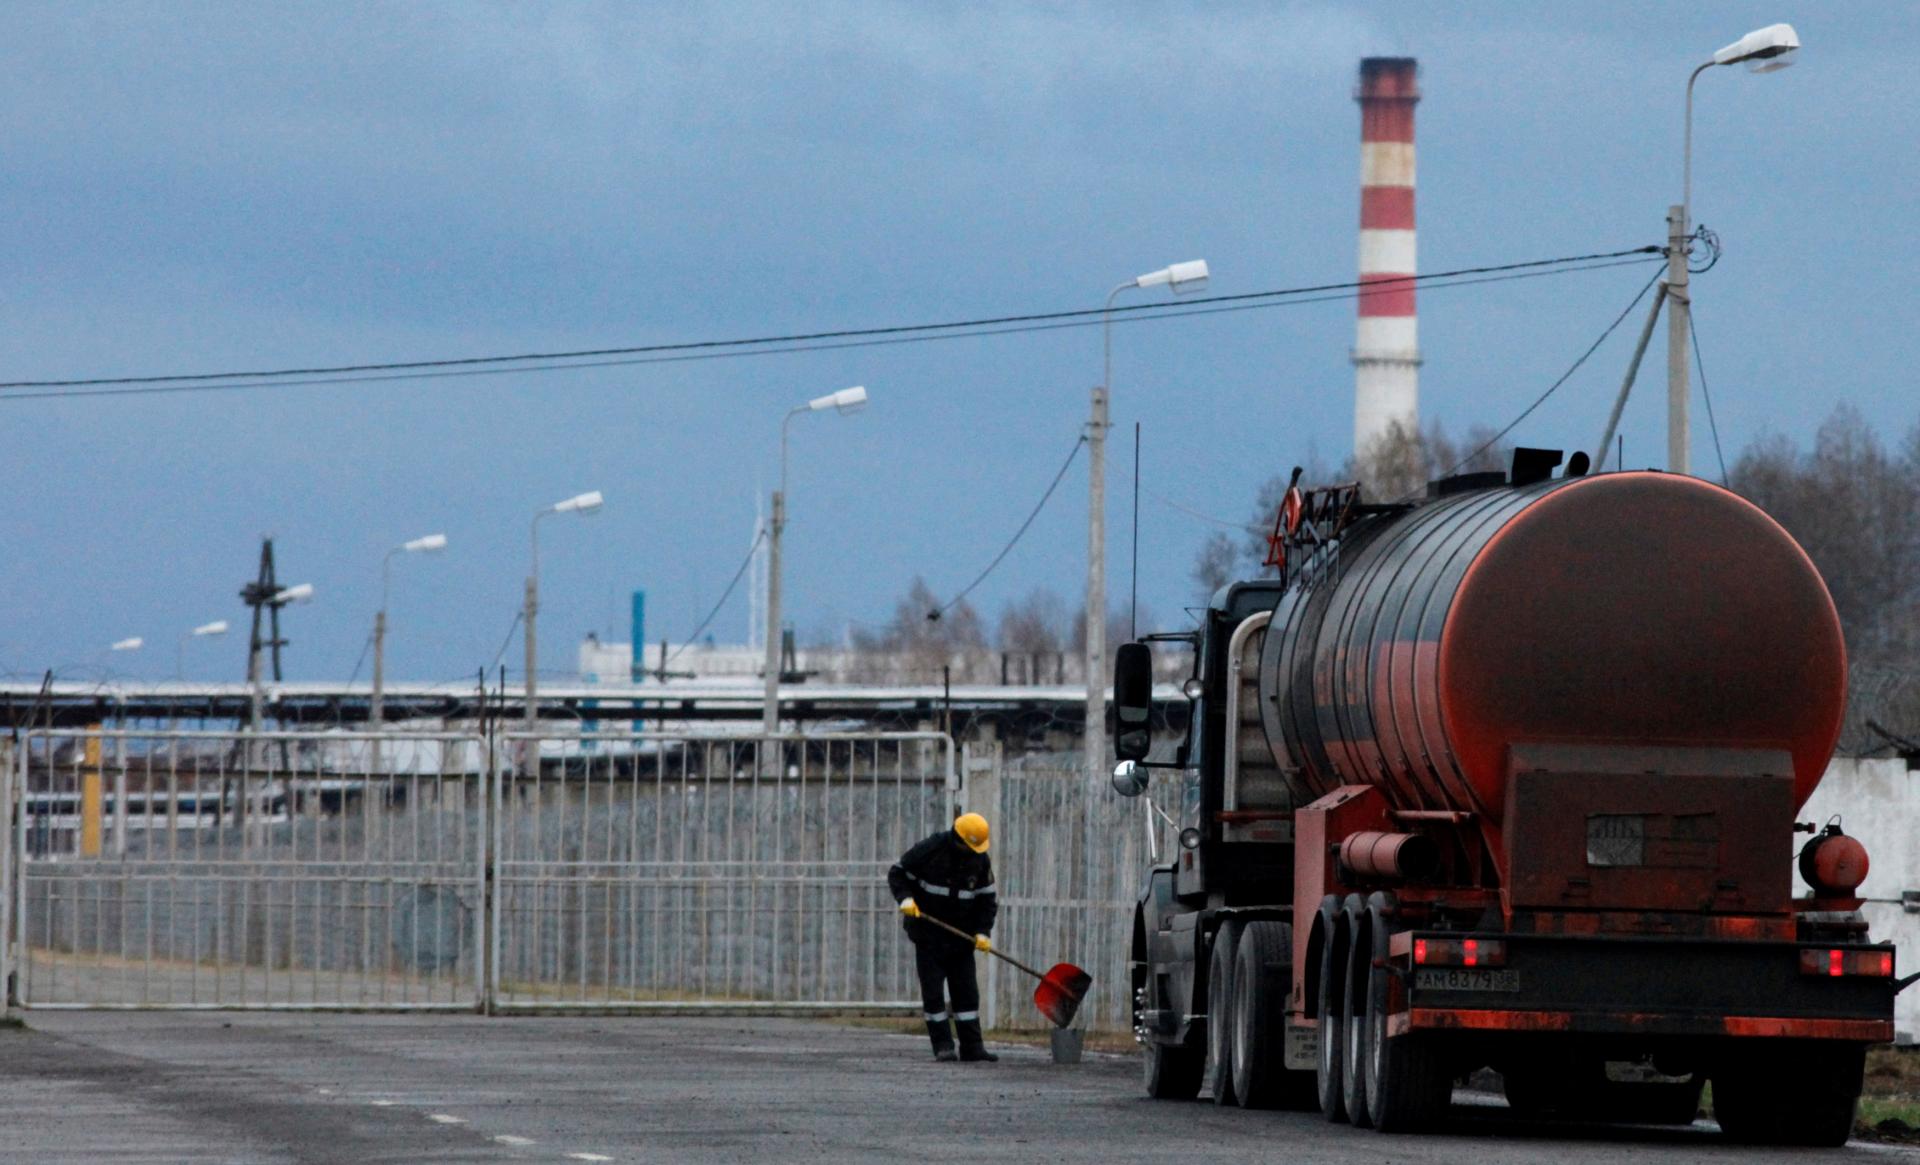 Vyvlastnenie Rosnefťu je podľa nemeckej vlády stále na stole. Berlín tlačí na rýchly predaj